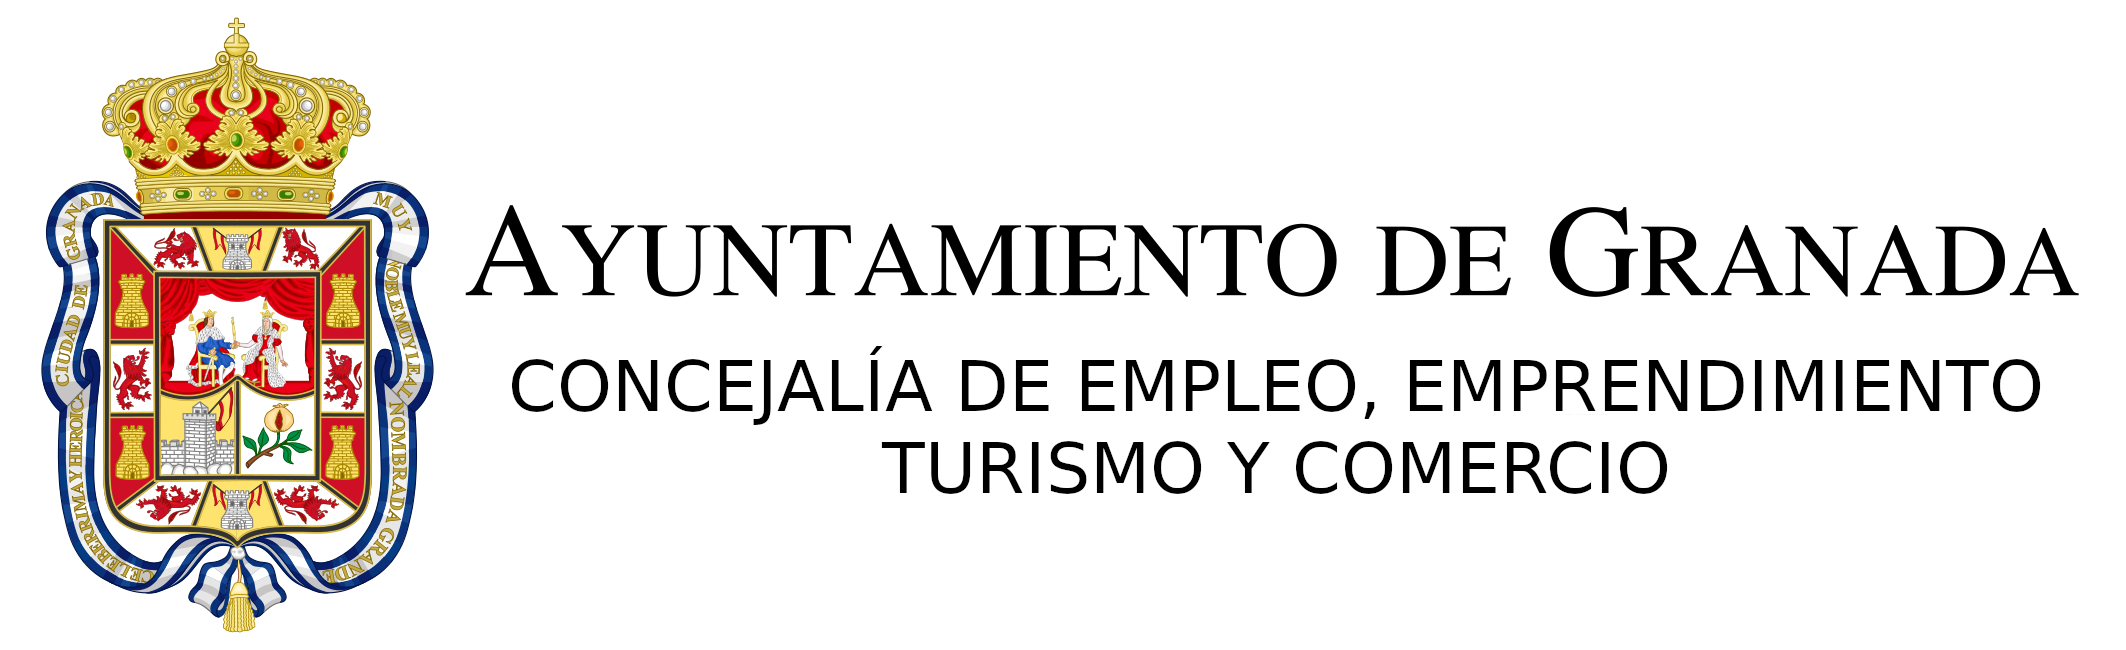 Logo de Ayuntamiento de Granada - Concejalia de empleo y emprendimiento